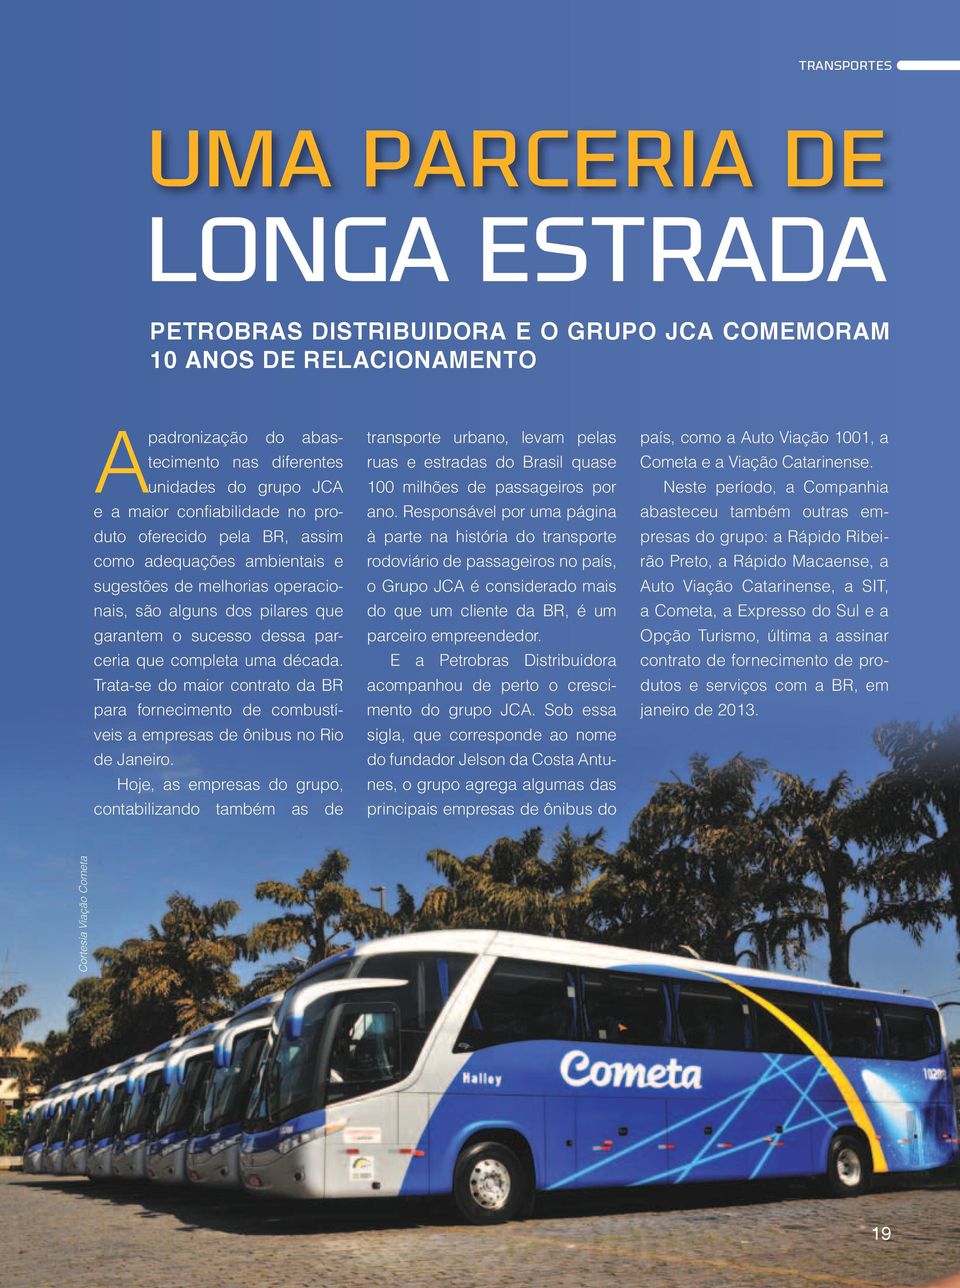 completa uma década. Trata-se do maior contrato da BR para fornecimento de combustíveis a empresas de ônibus no Rio de Janeiro.